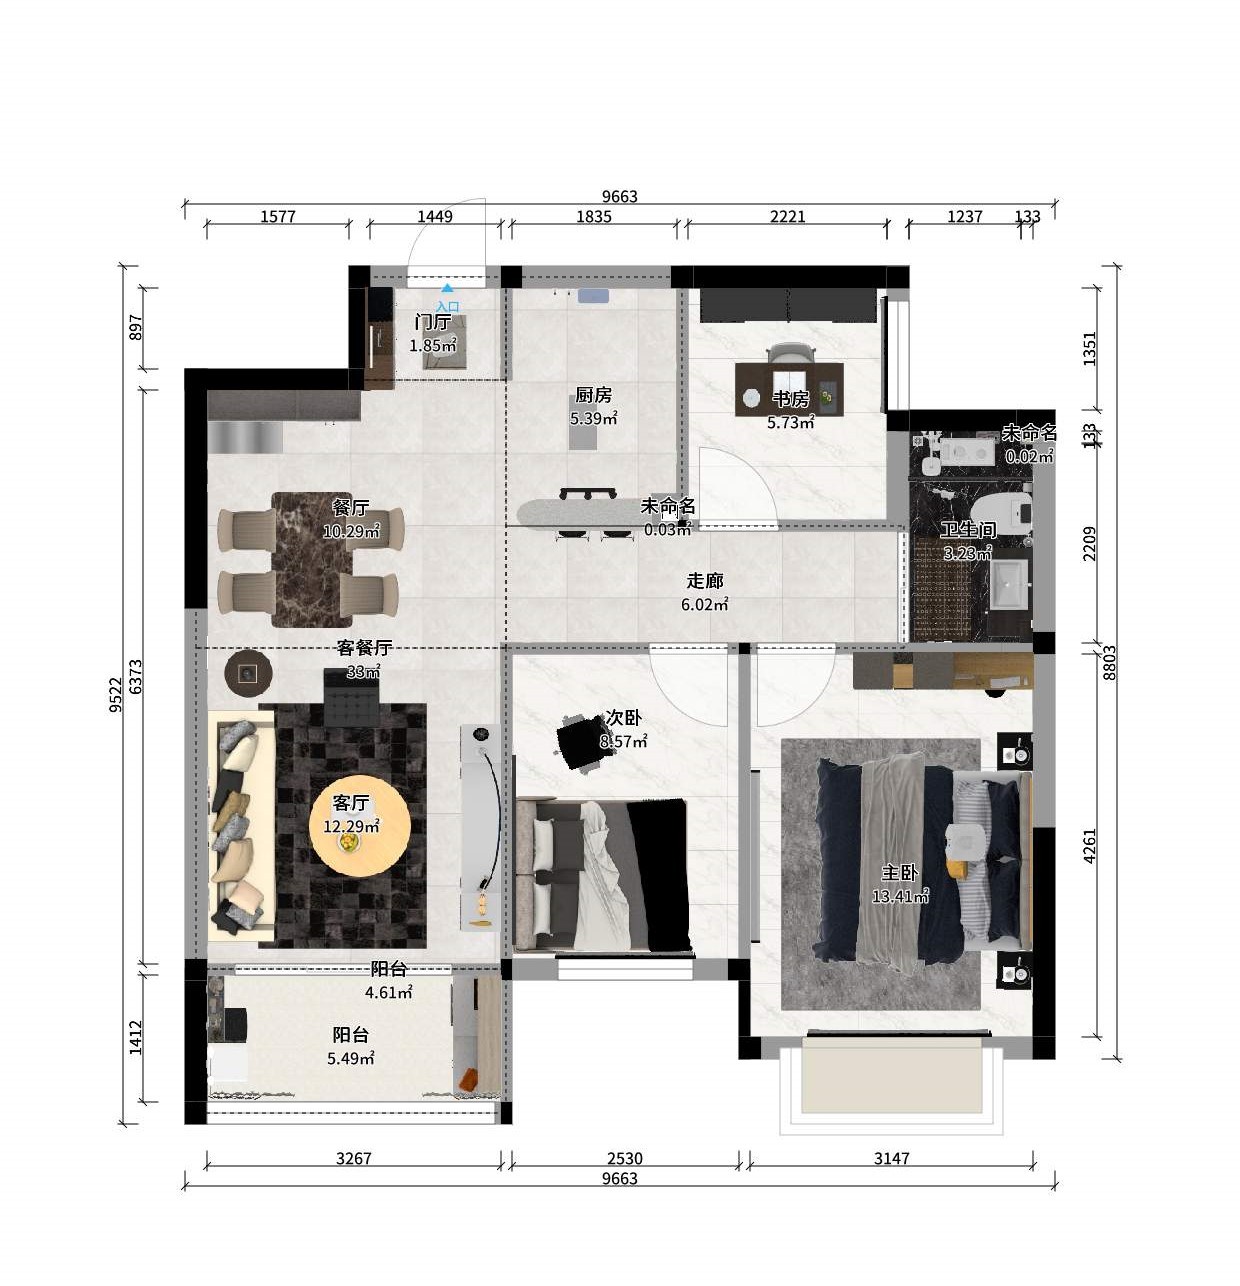 83现代三房装修效果图,现代简约-简单爱装修案例效果图-美广网(图1)